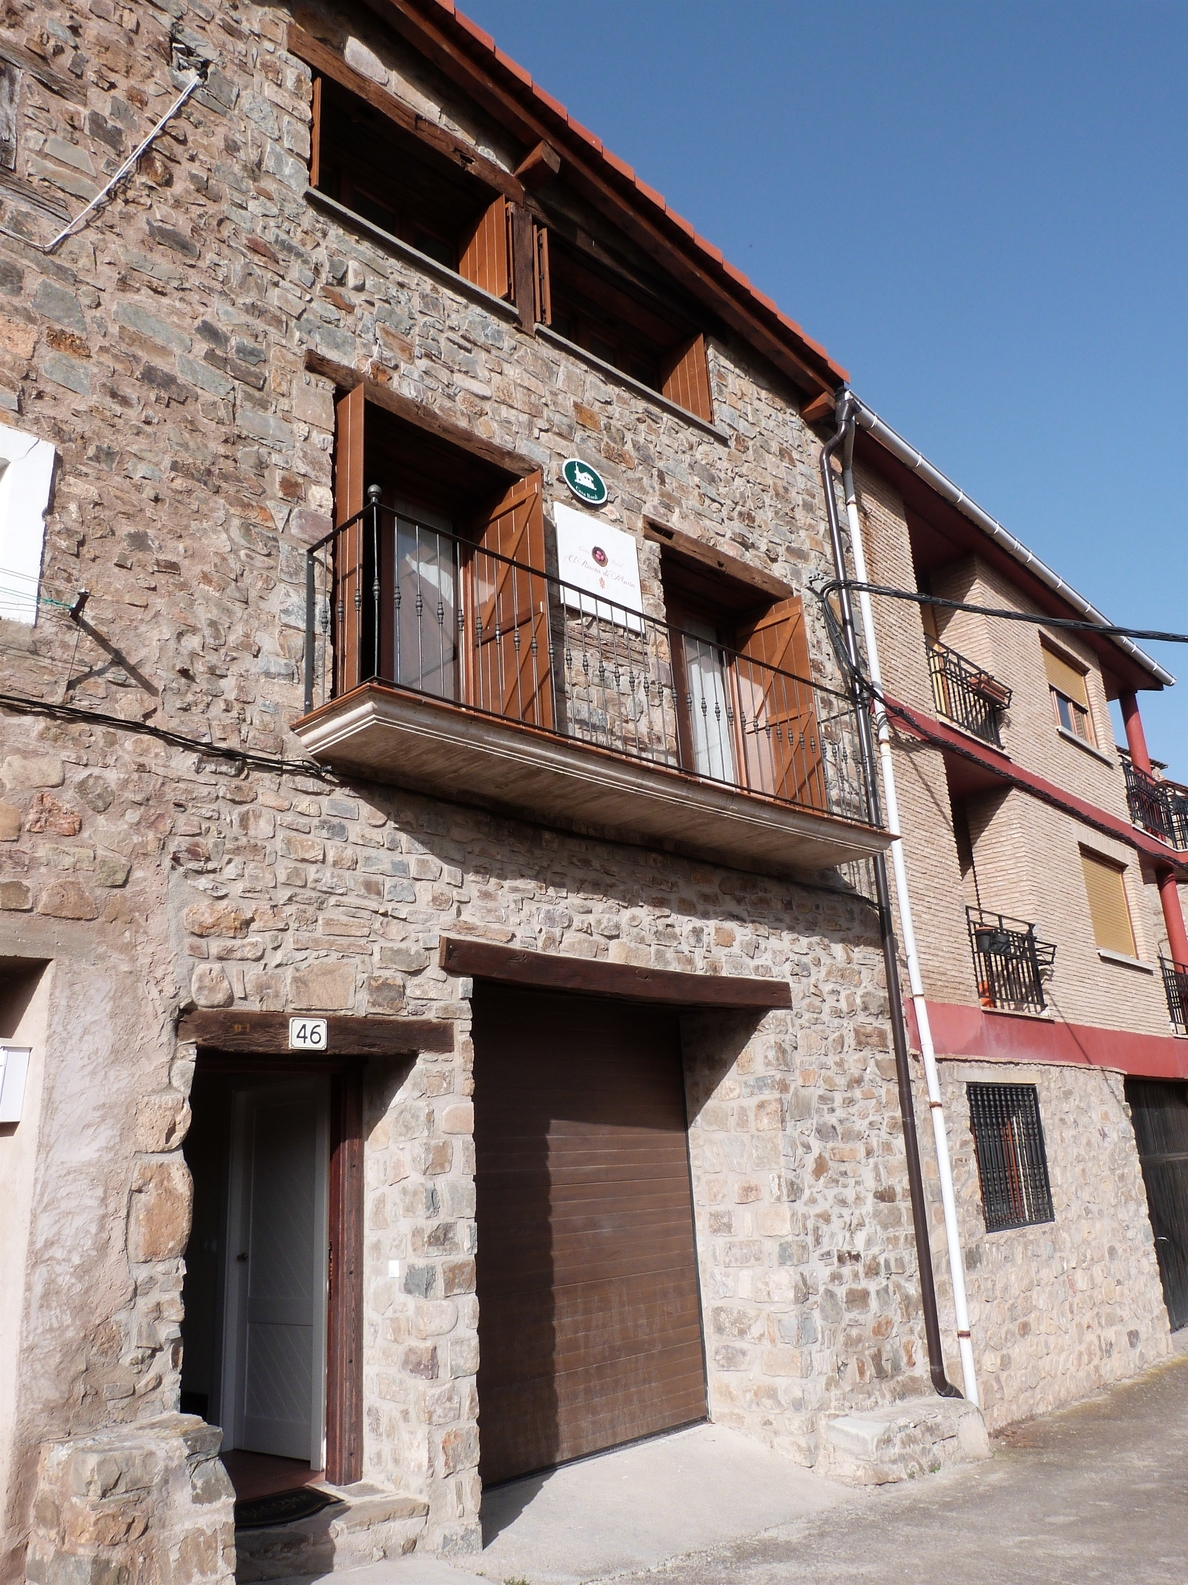 El Gobierno de La Rioja destinará 600.000 euros a subvencionar actuaciones en materia turística